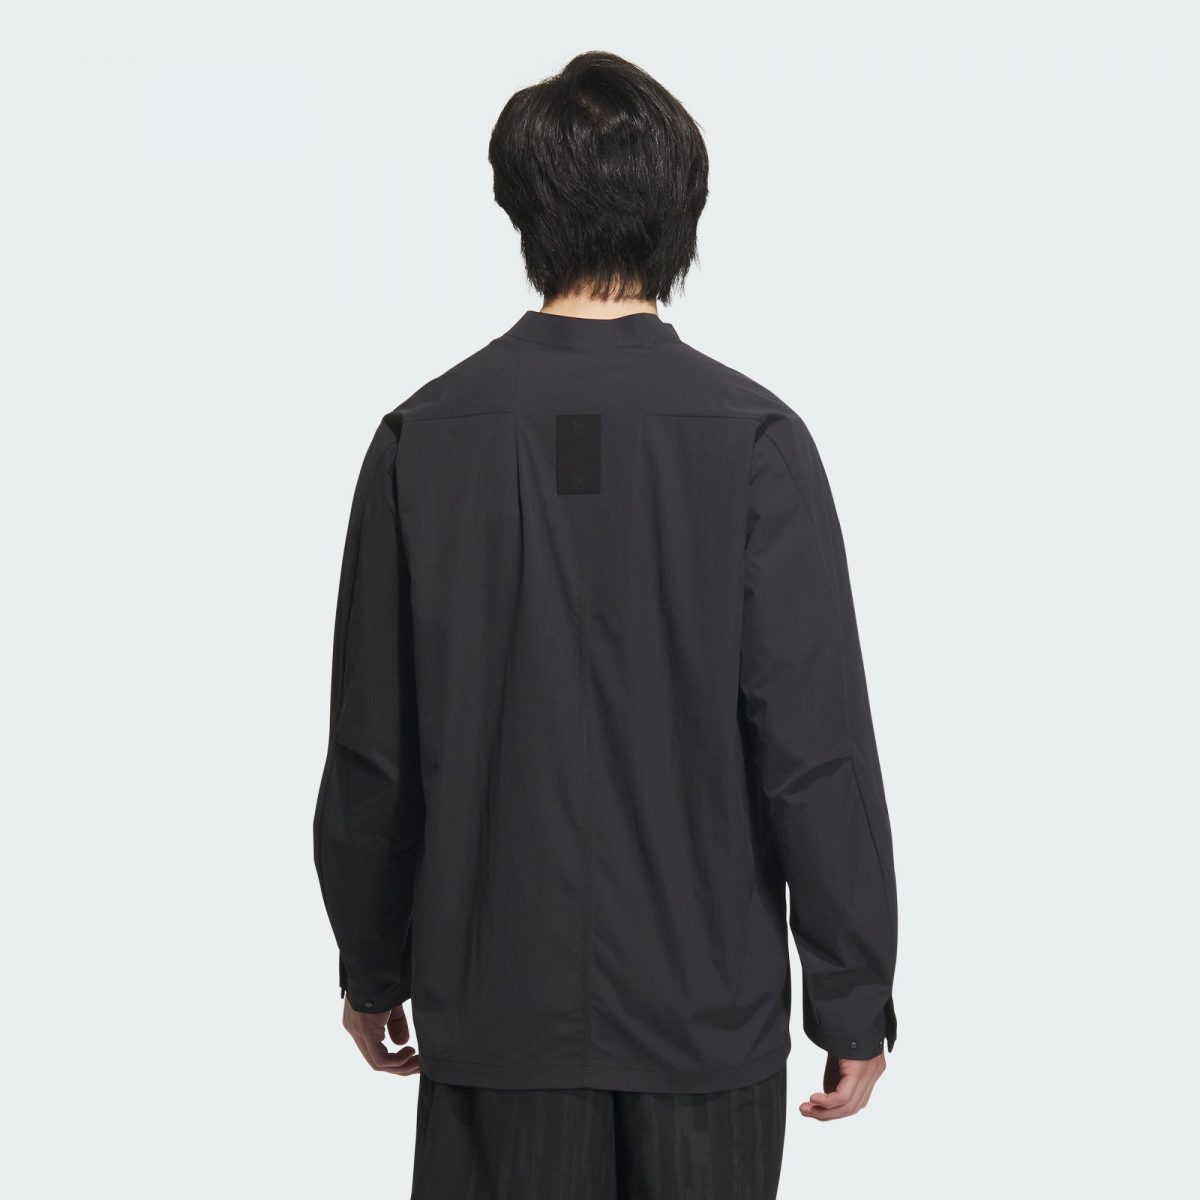 Мужская рубашка adidas WUJI LIGHTWEIGHT SHIRTS черная фотография